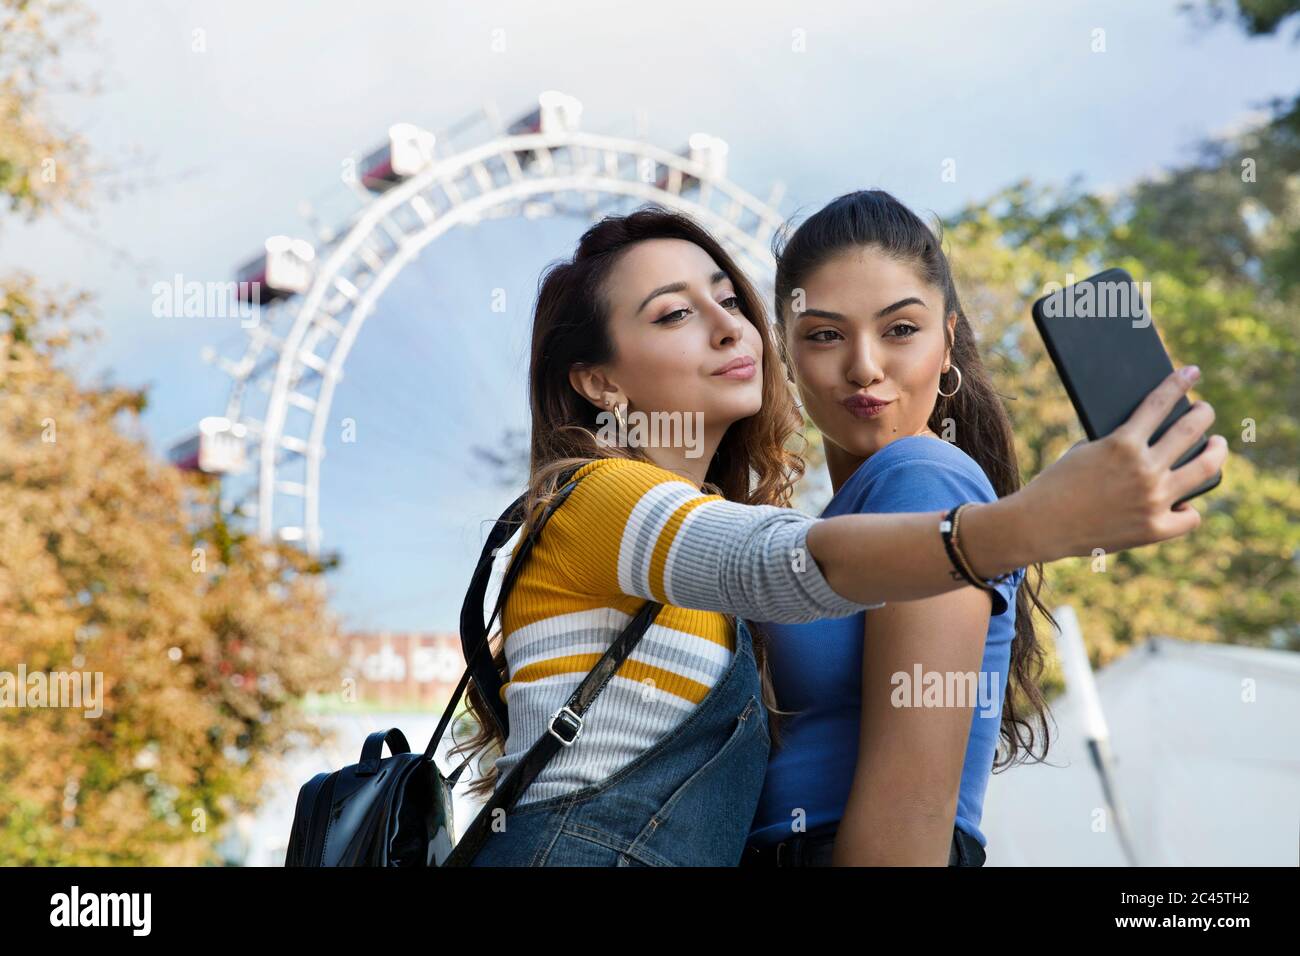 Deux jeunes femmes aux longs cheveux bruns se tenant dans un parc près d'une grande roue, prenant selfie avec téléphone portable. Banque D'Images